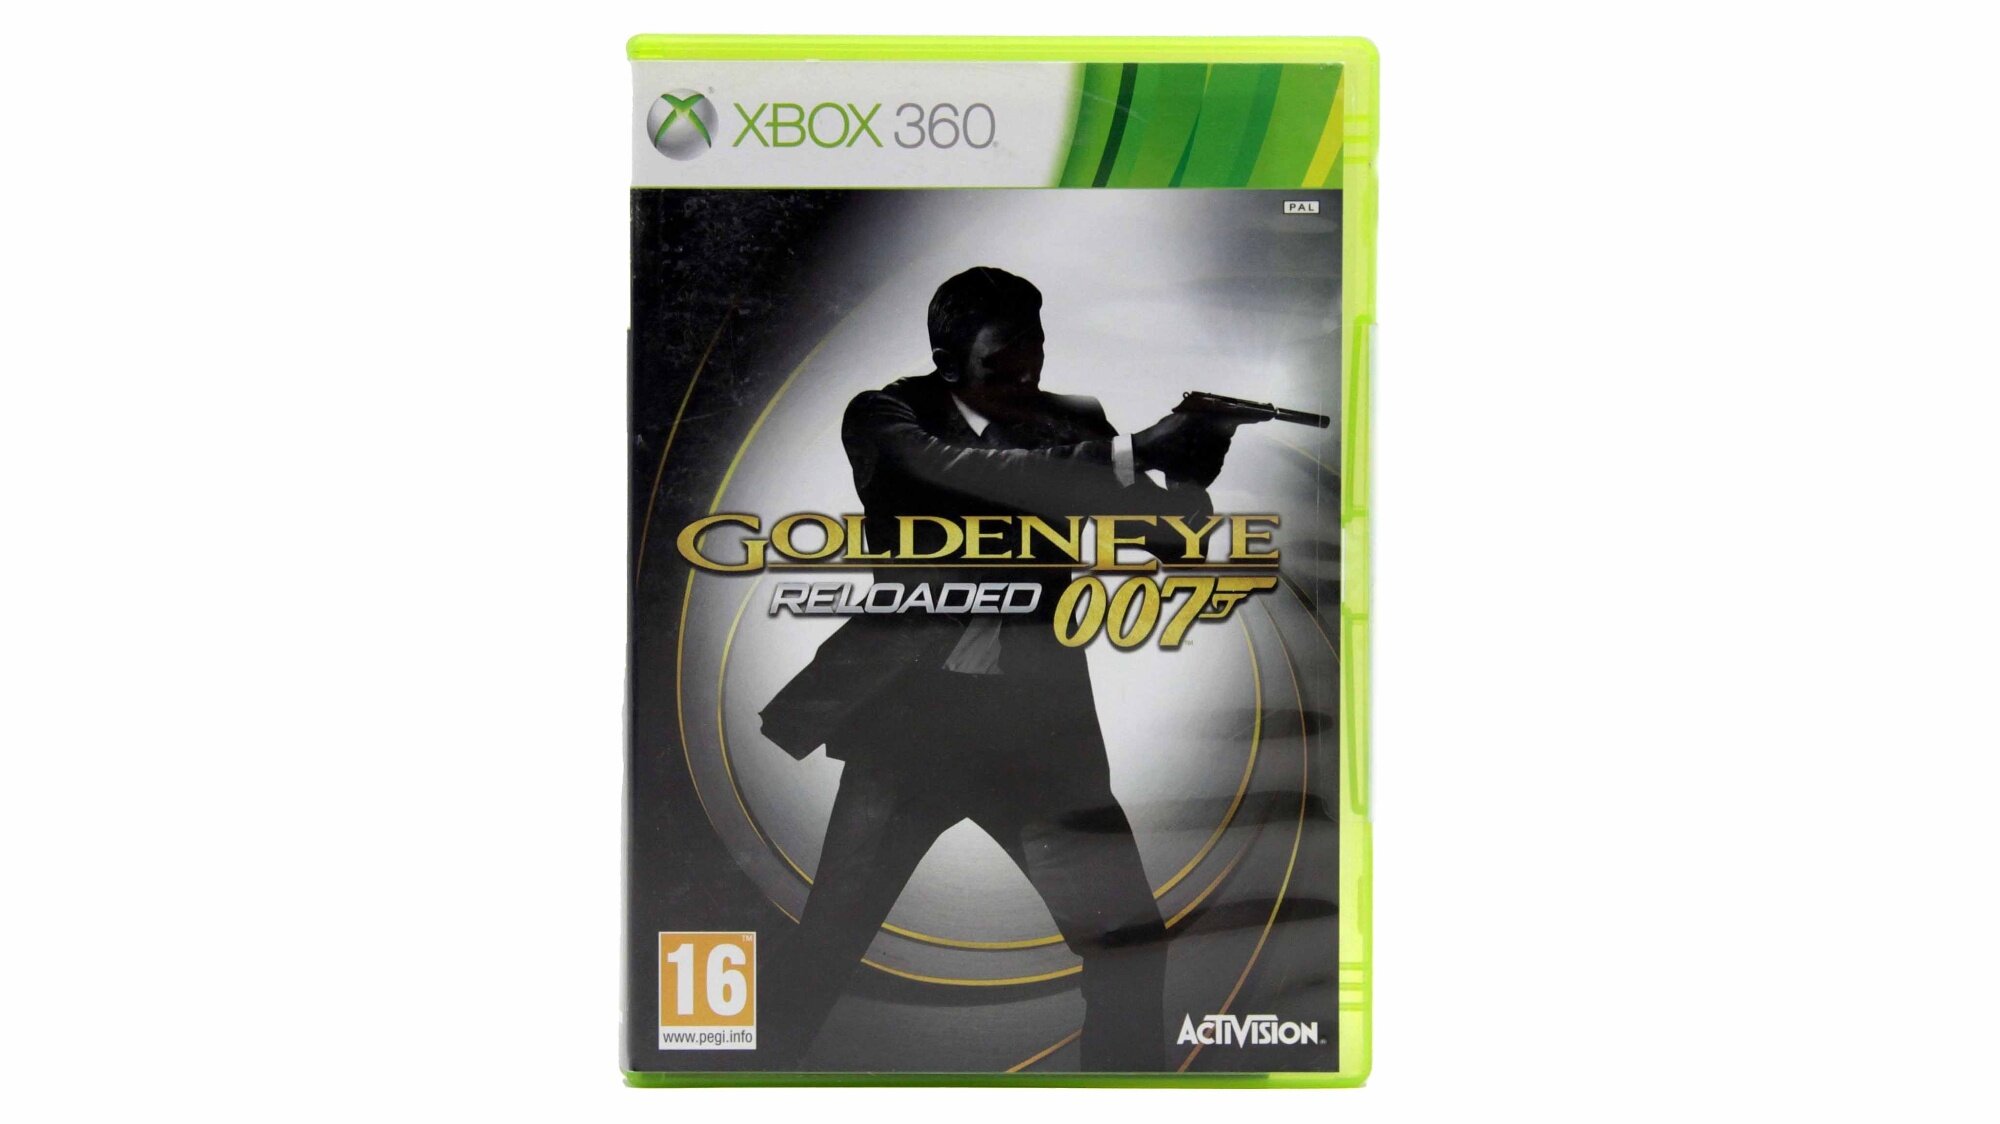 Golden Eye Reloaded 007 (Xbox 360)